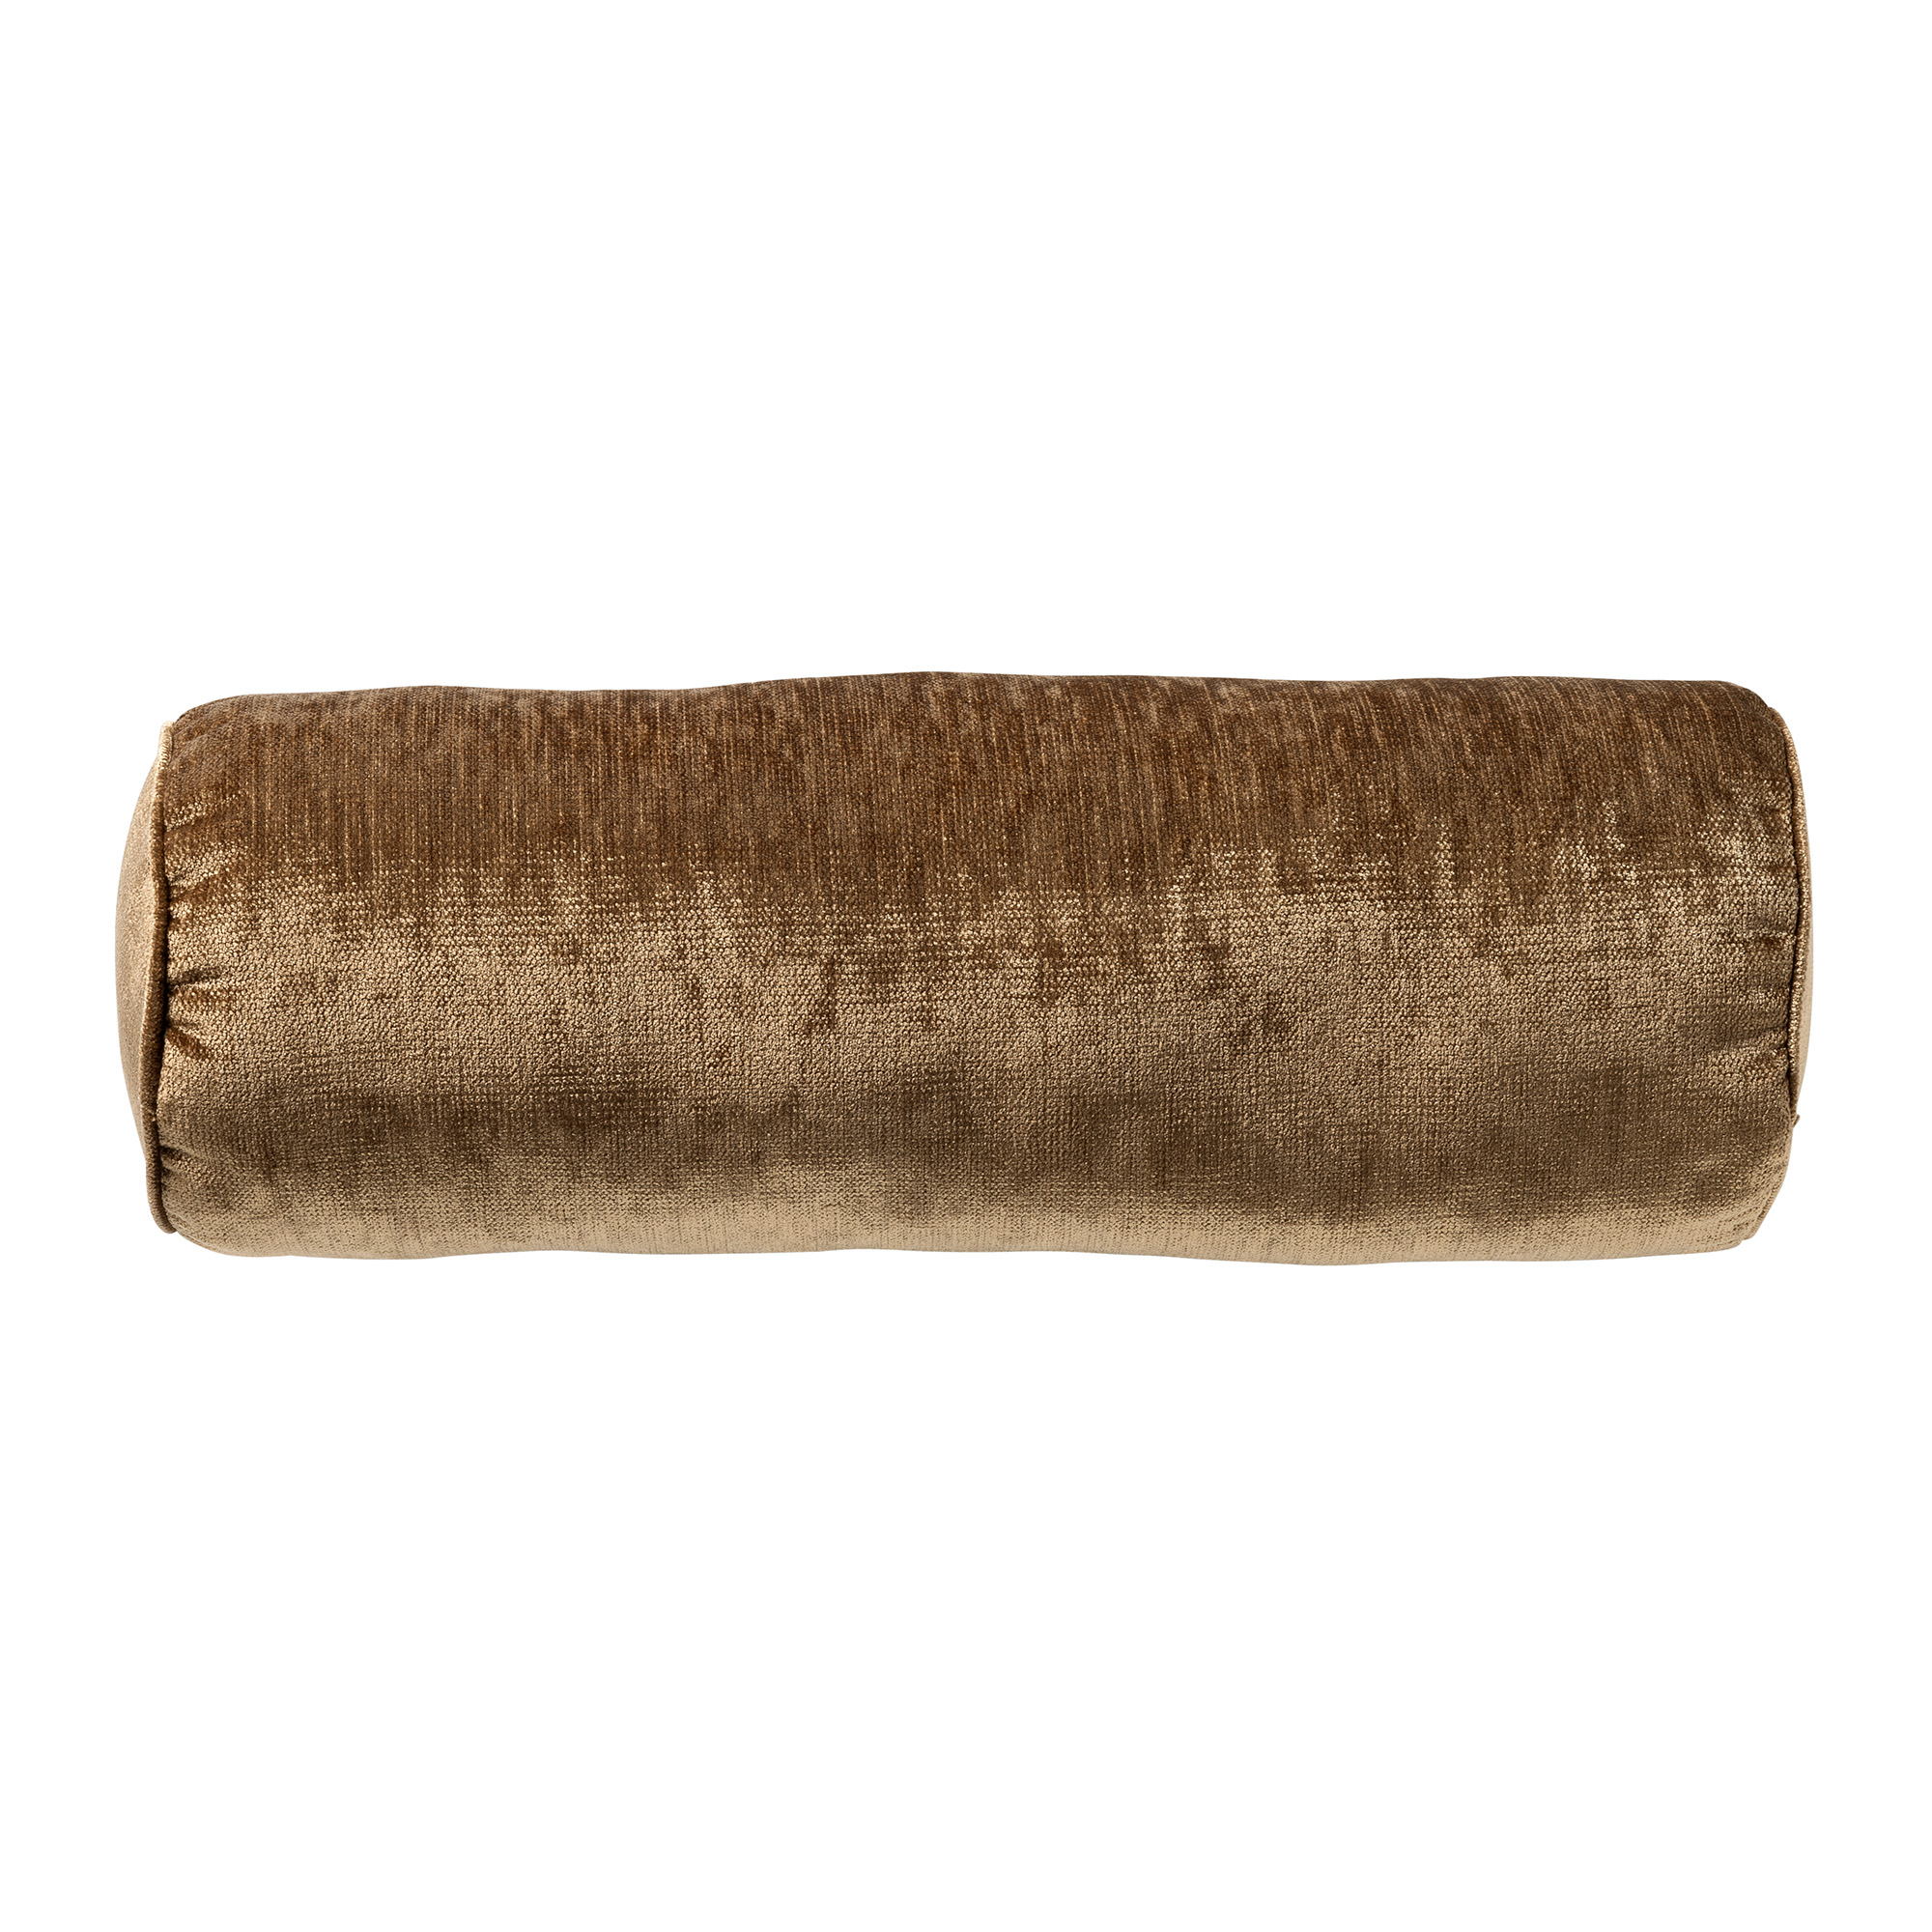 LEE - Rollkissen 18x50 cm - Tobacco Brown - braun